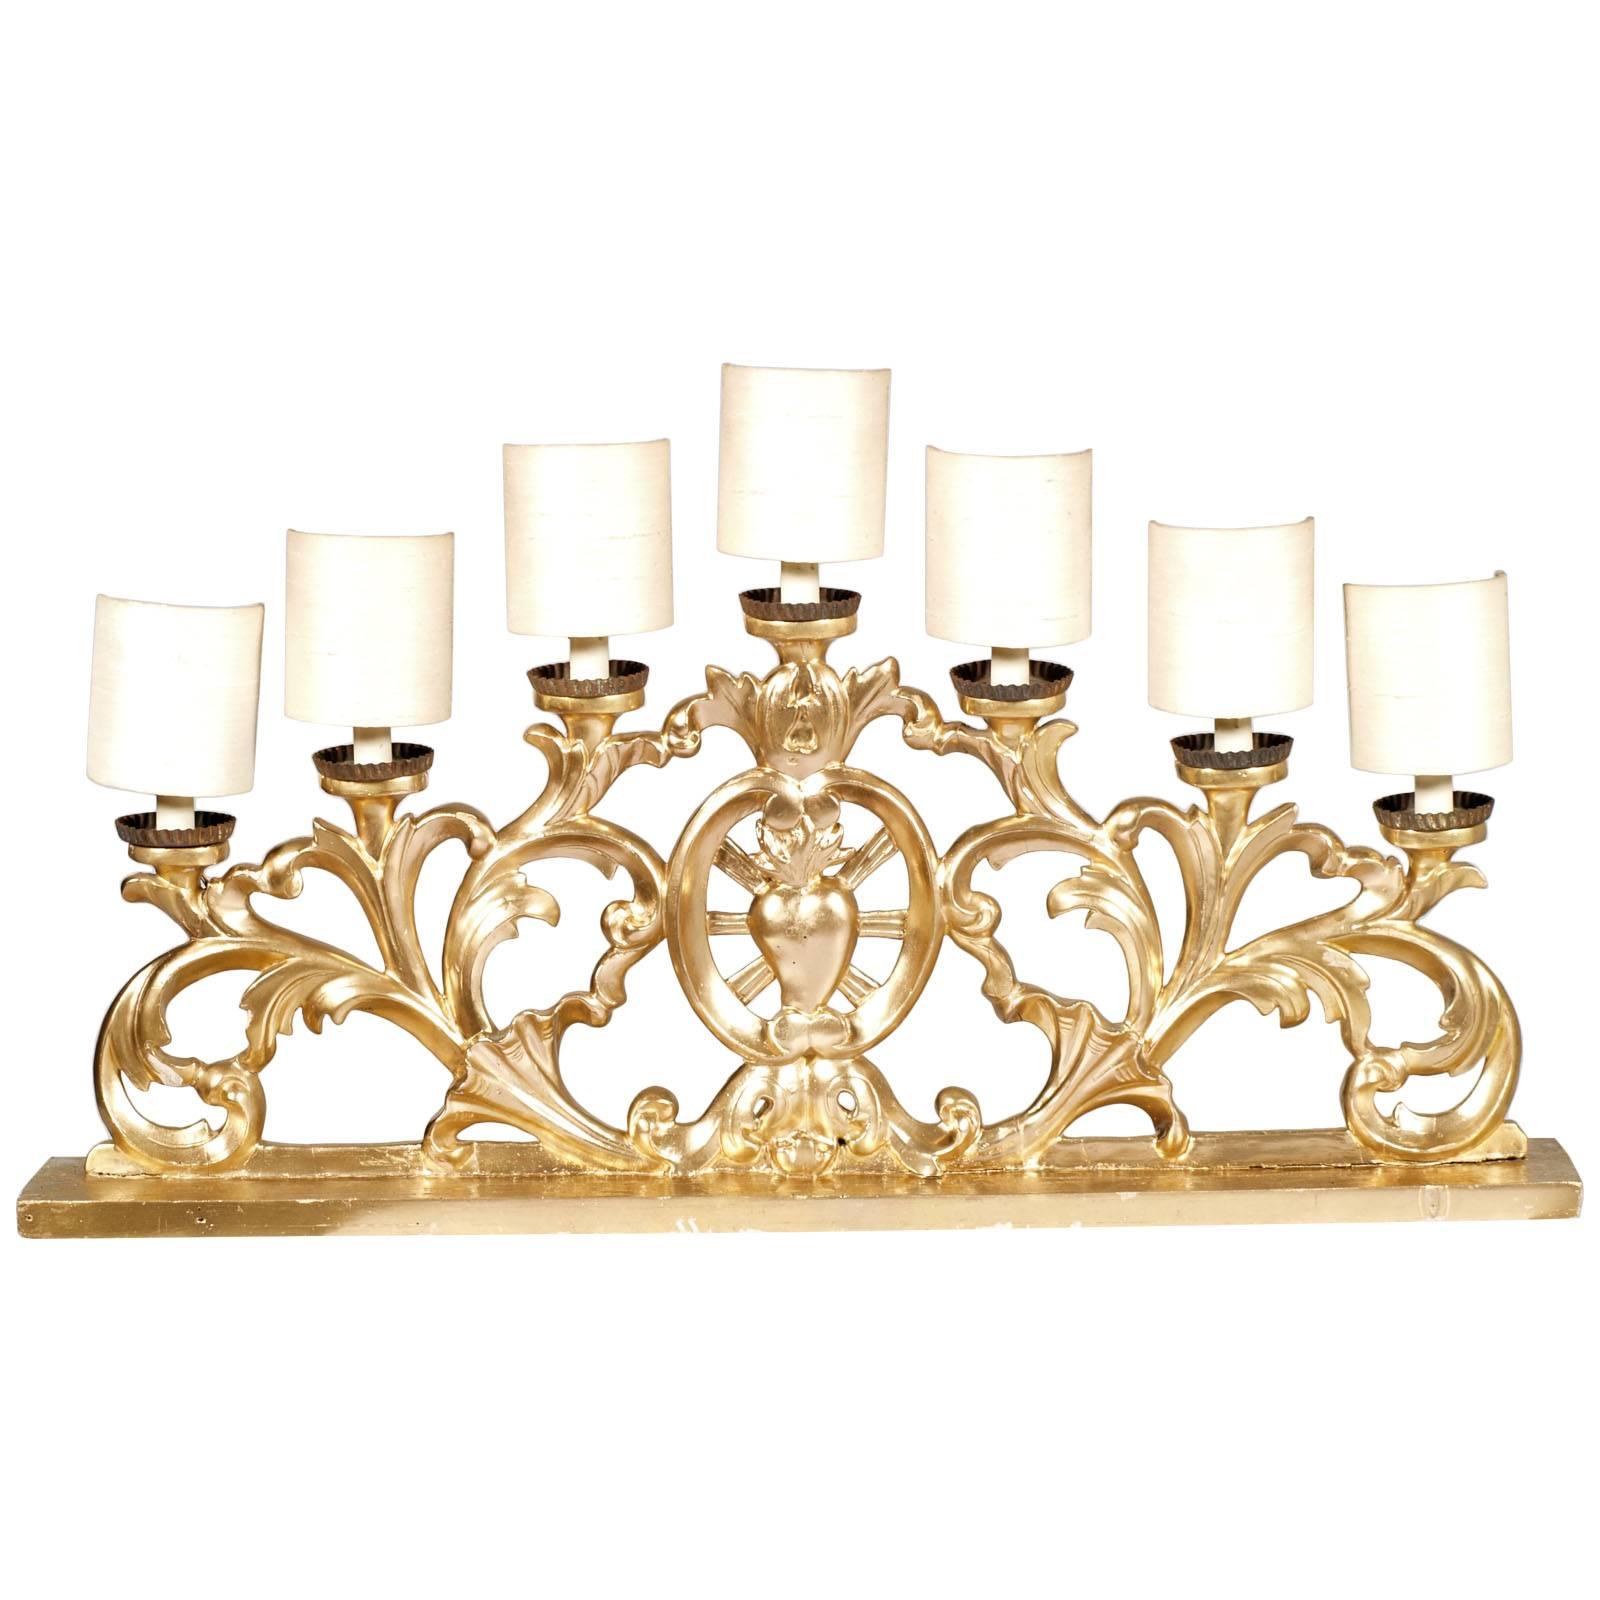 Chandelier baroque vénitien à sept lumières, indiqué pour une cheminée ou une crédence, en noyer sculpté à la main, finition feuille d'or, produit d'un chandelier du début des années 1700
Le cœur central sculpté, indique son origine